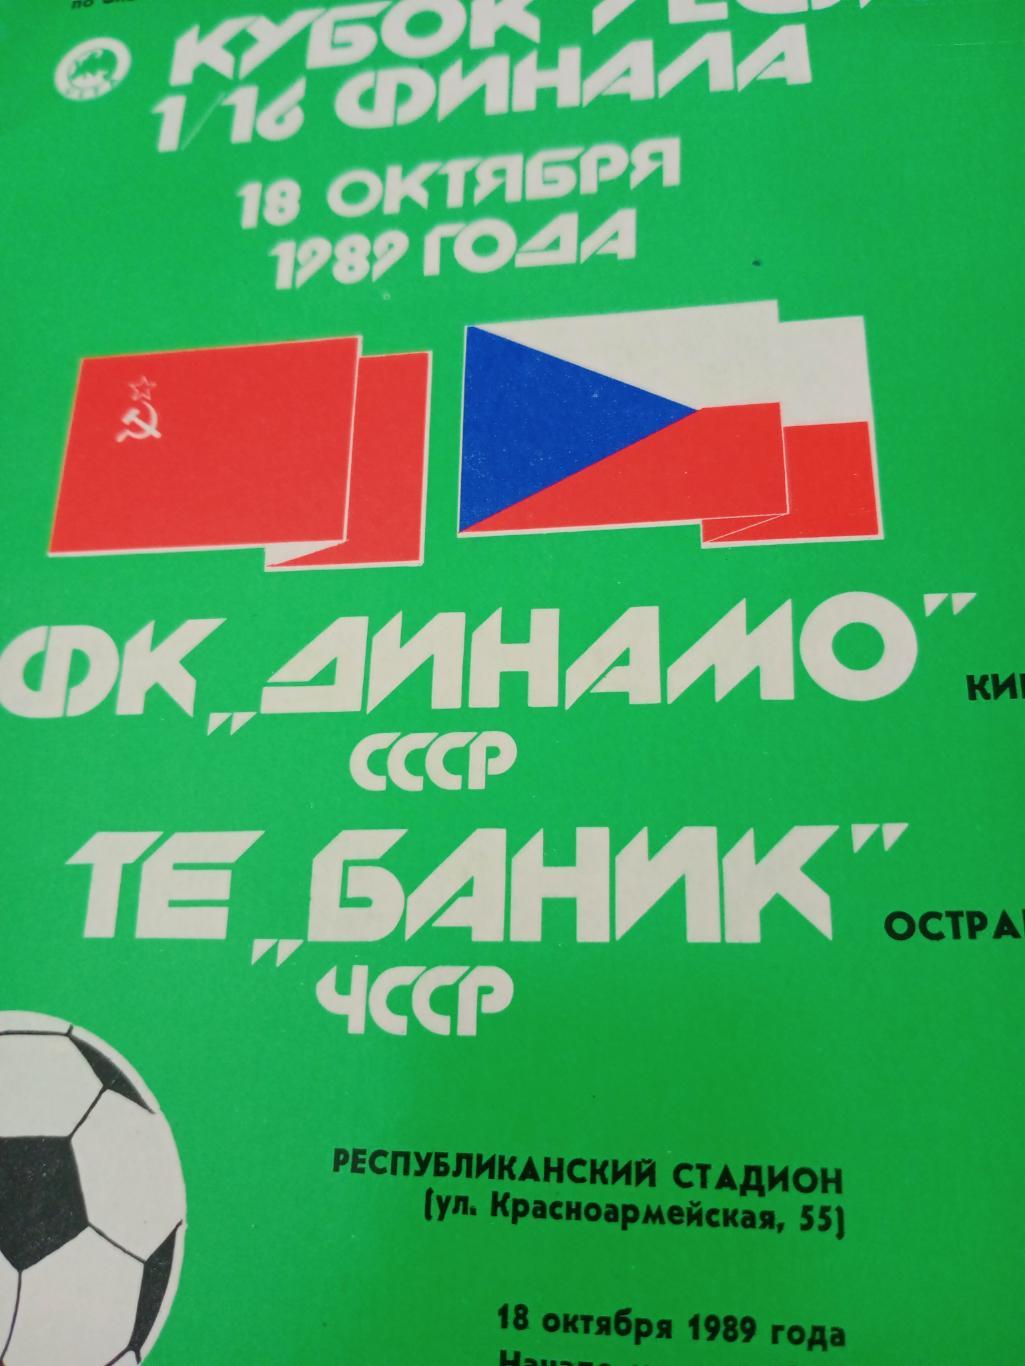 Динамо Киев - Баник Острава. 18 октября 1989 год